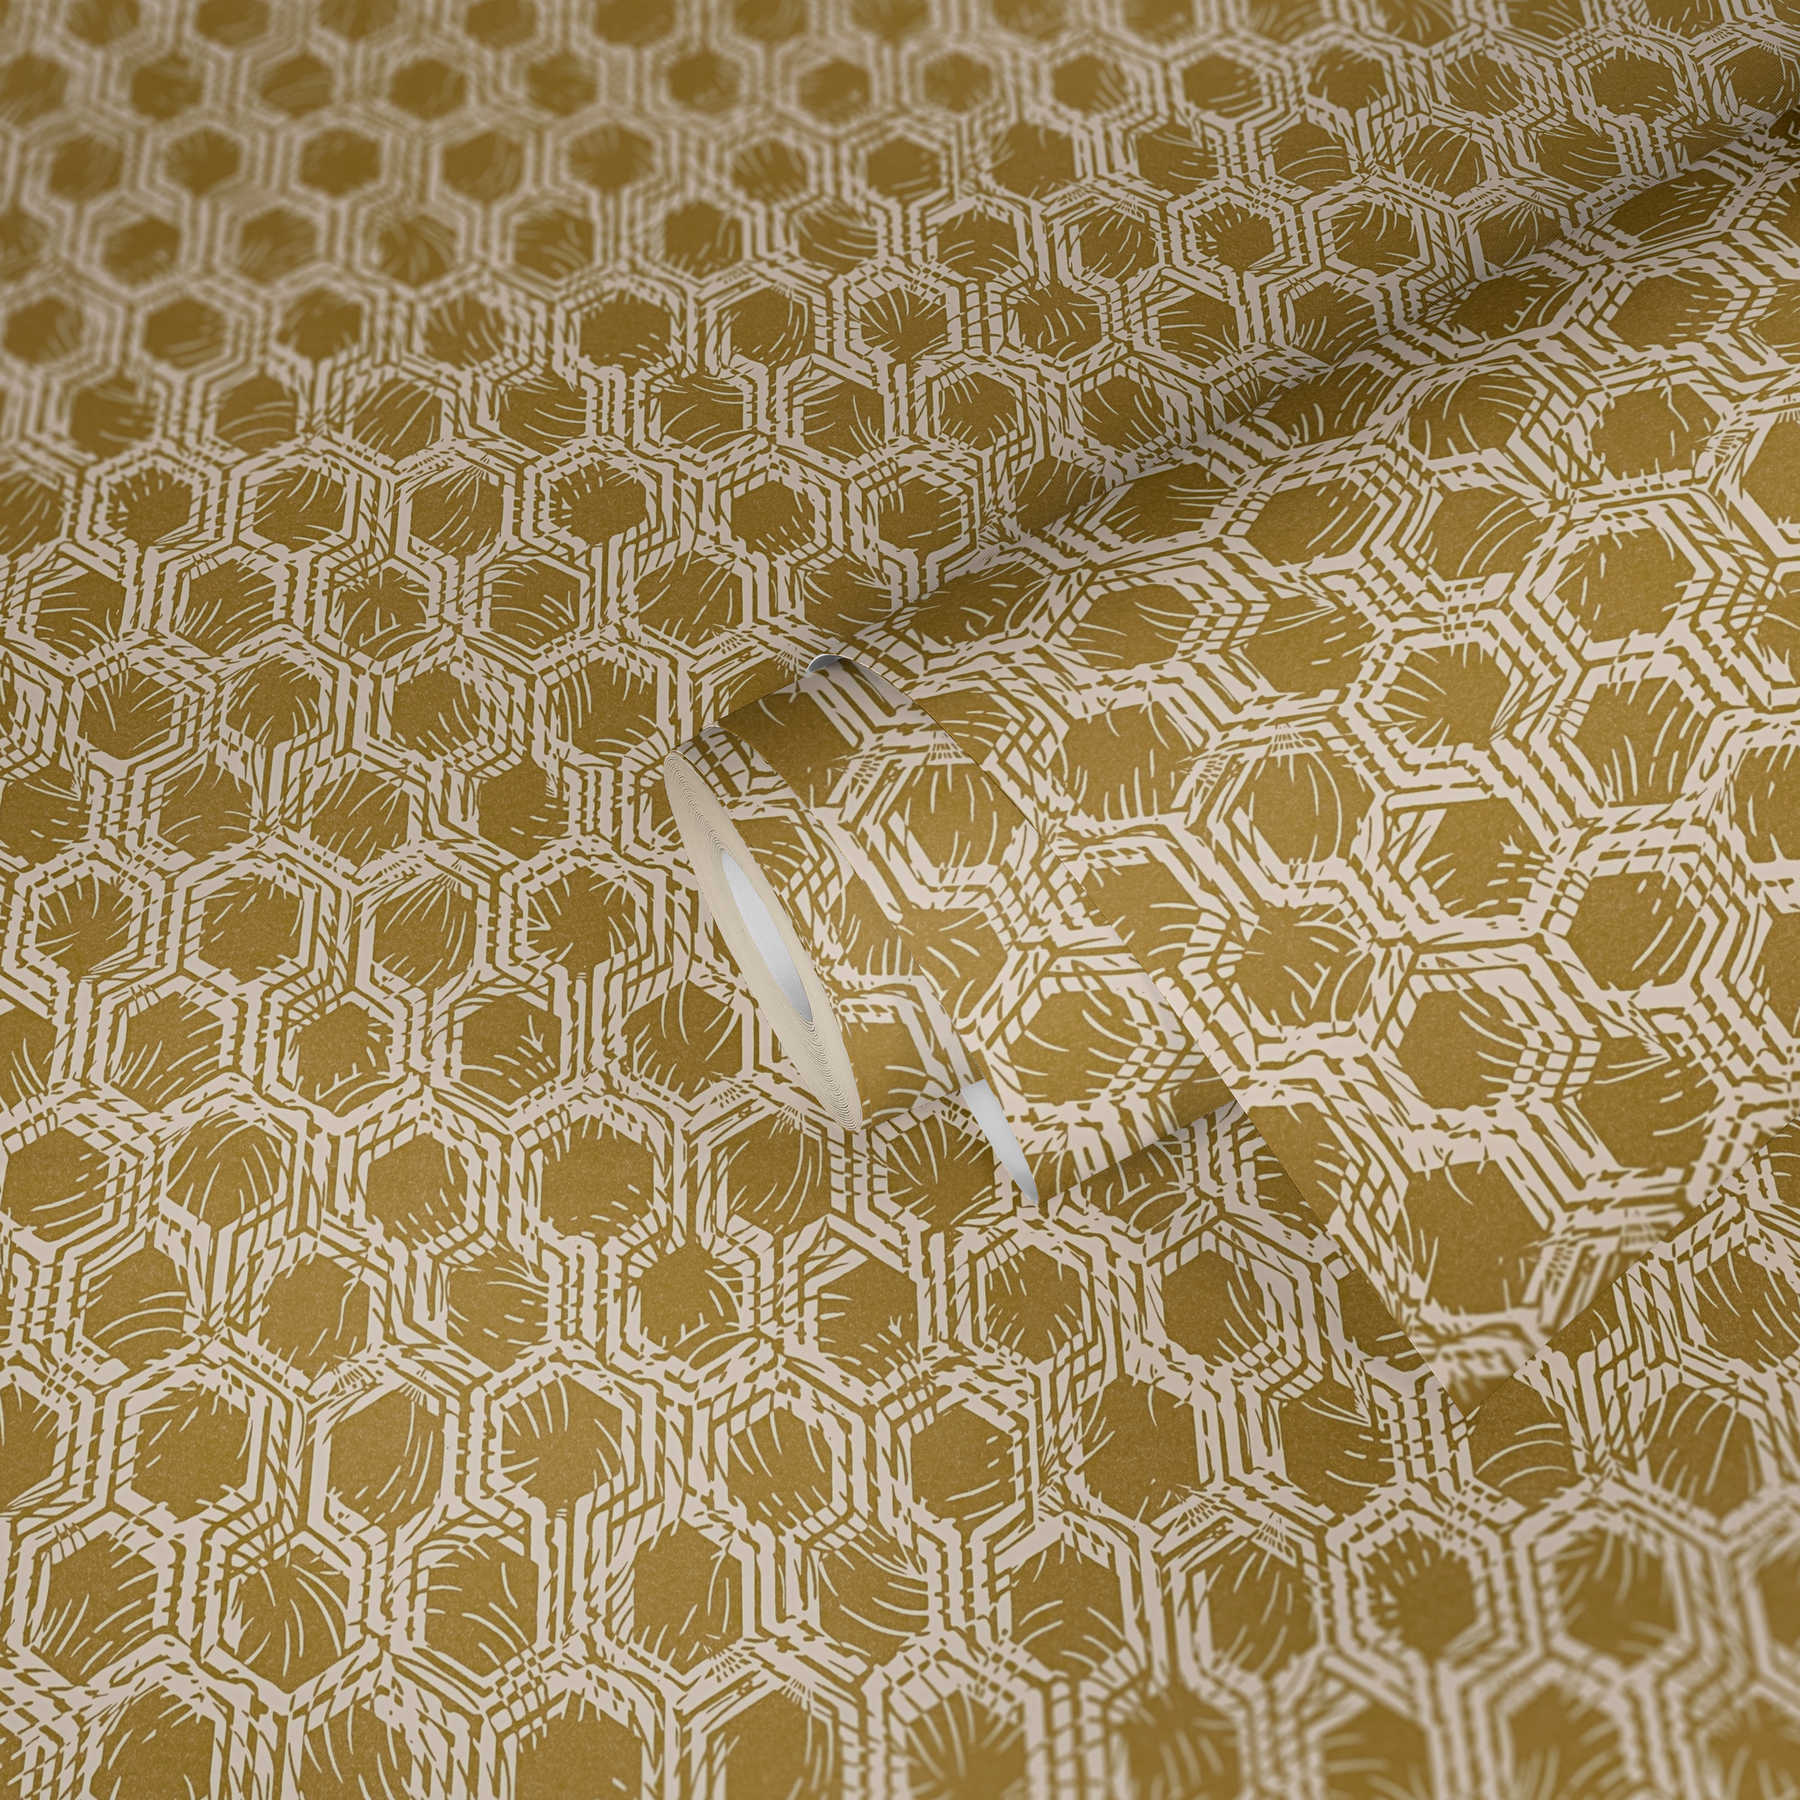             papier peint en papier métallique à motifs géométriques - or, beige
        